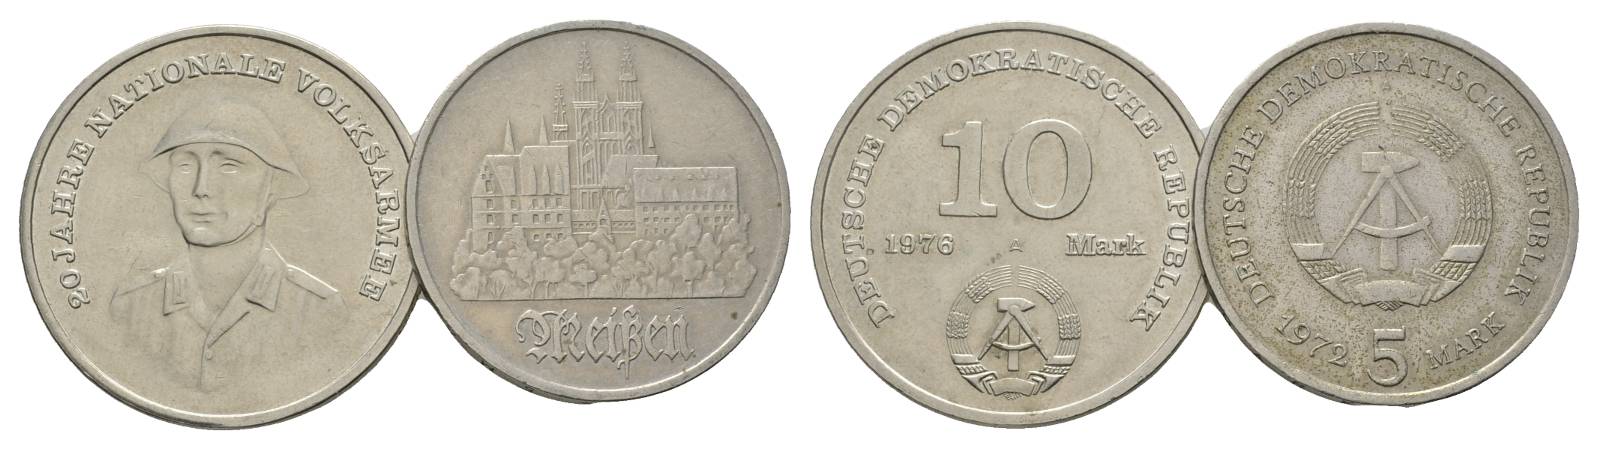  DDR, 5 Mark 1976 und 10 Mark 1972   